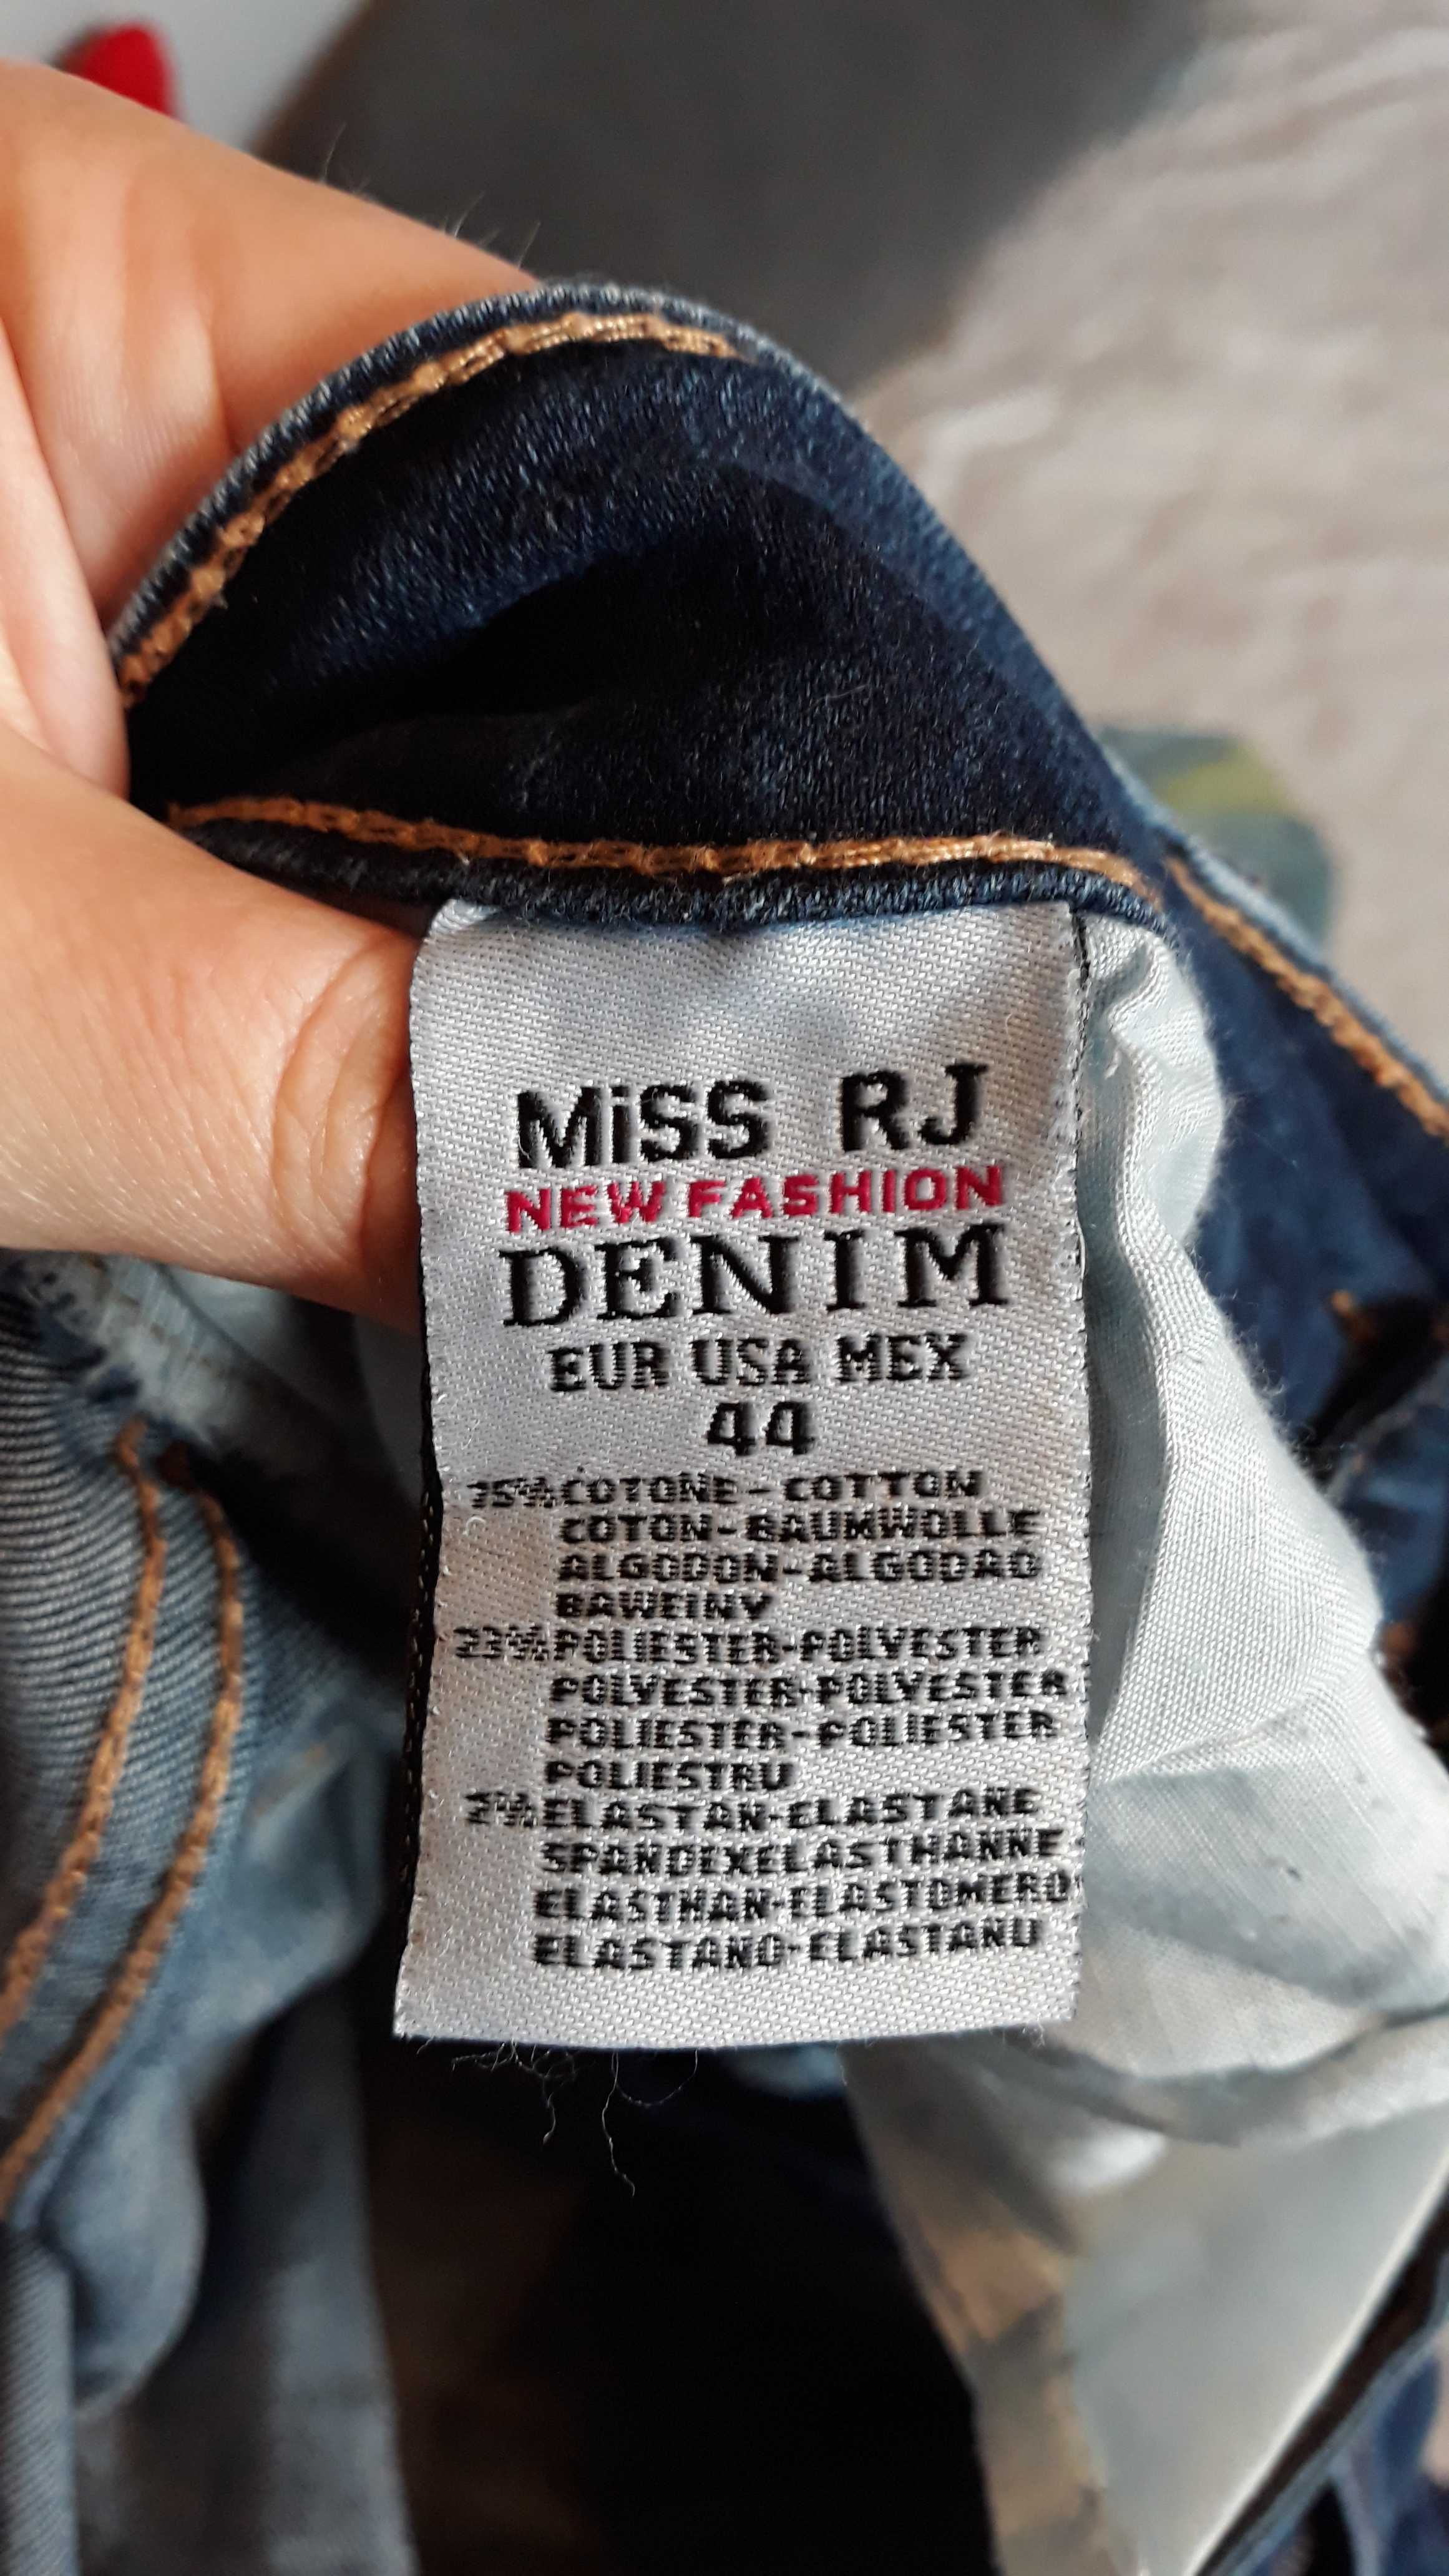 Spodnie jeansowe damskie 44